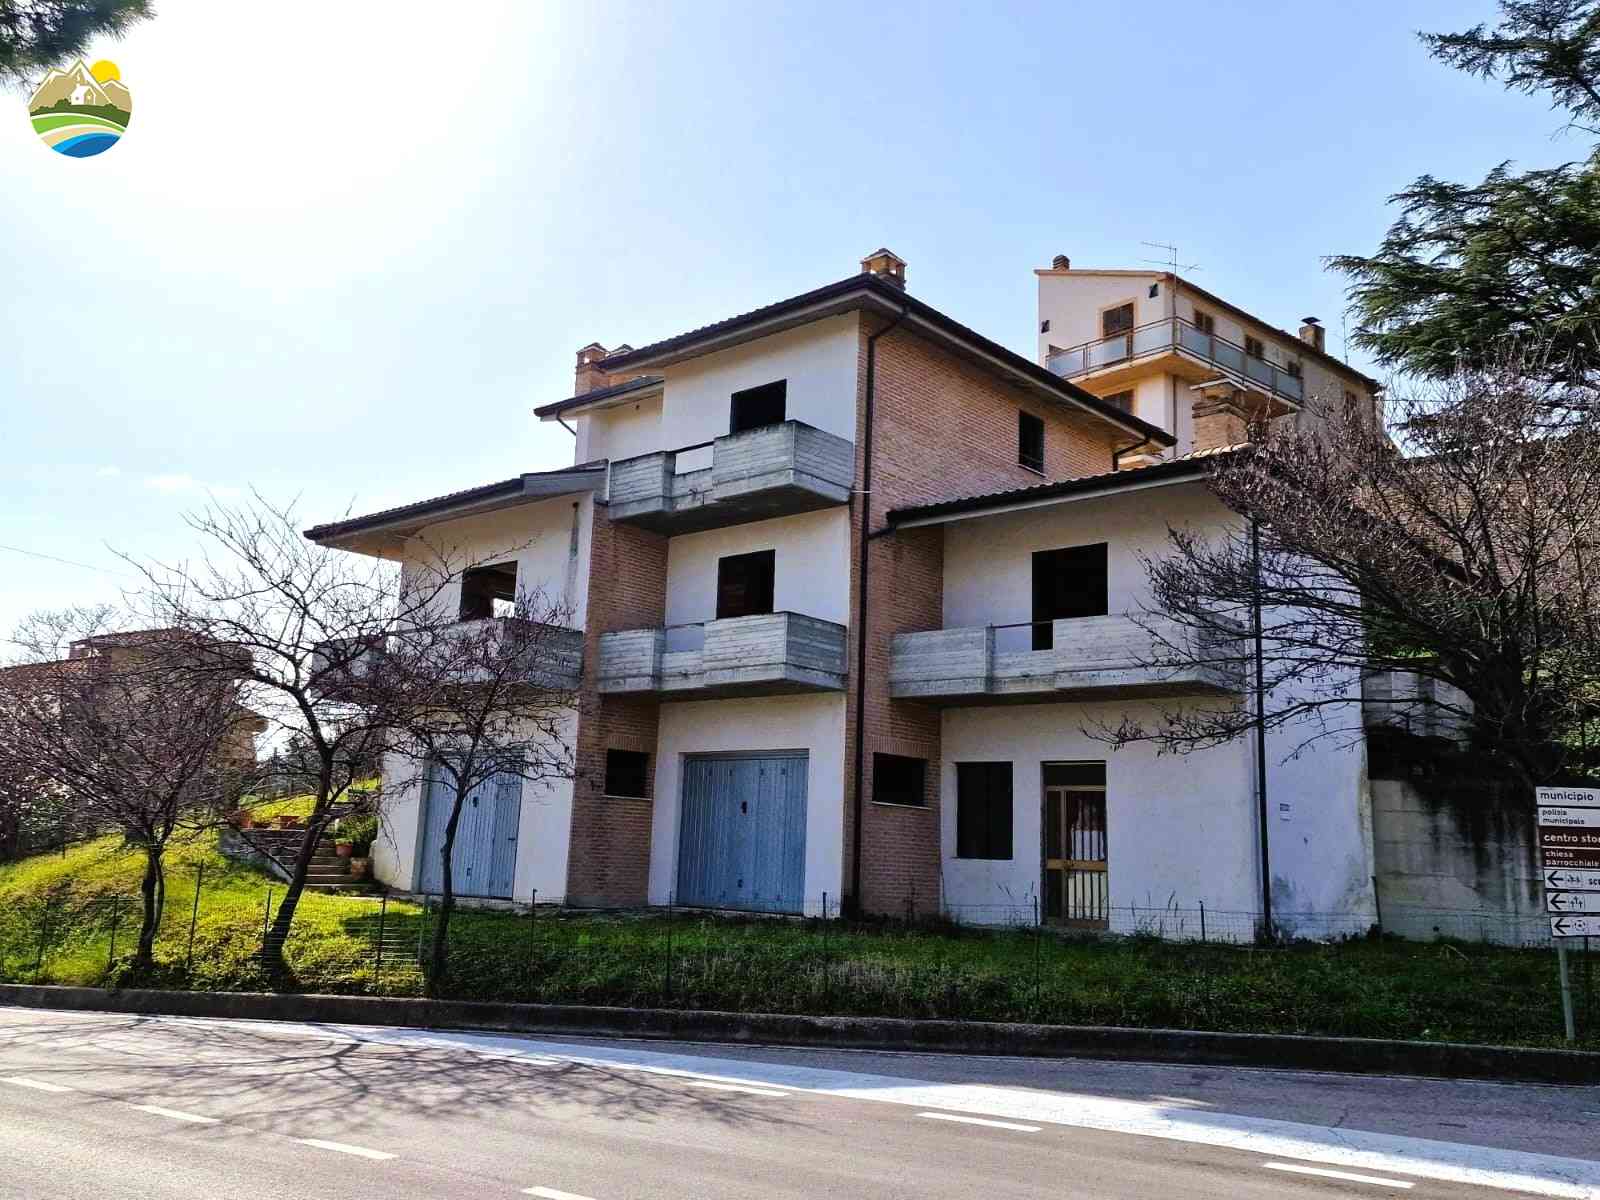 Villa Villa for sale Castilenti (TE), Villa Mandorlo - Castilenti - EUR 129.450 10